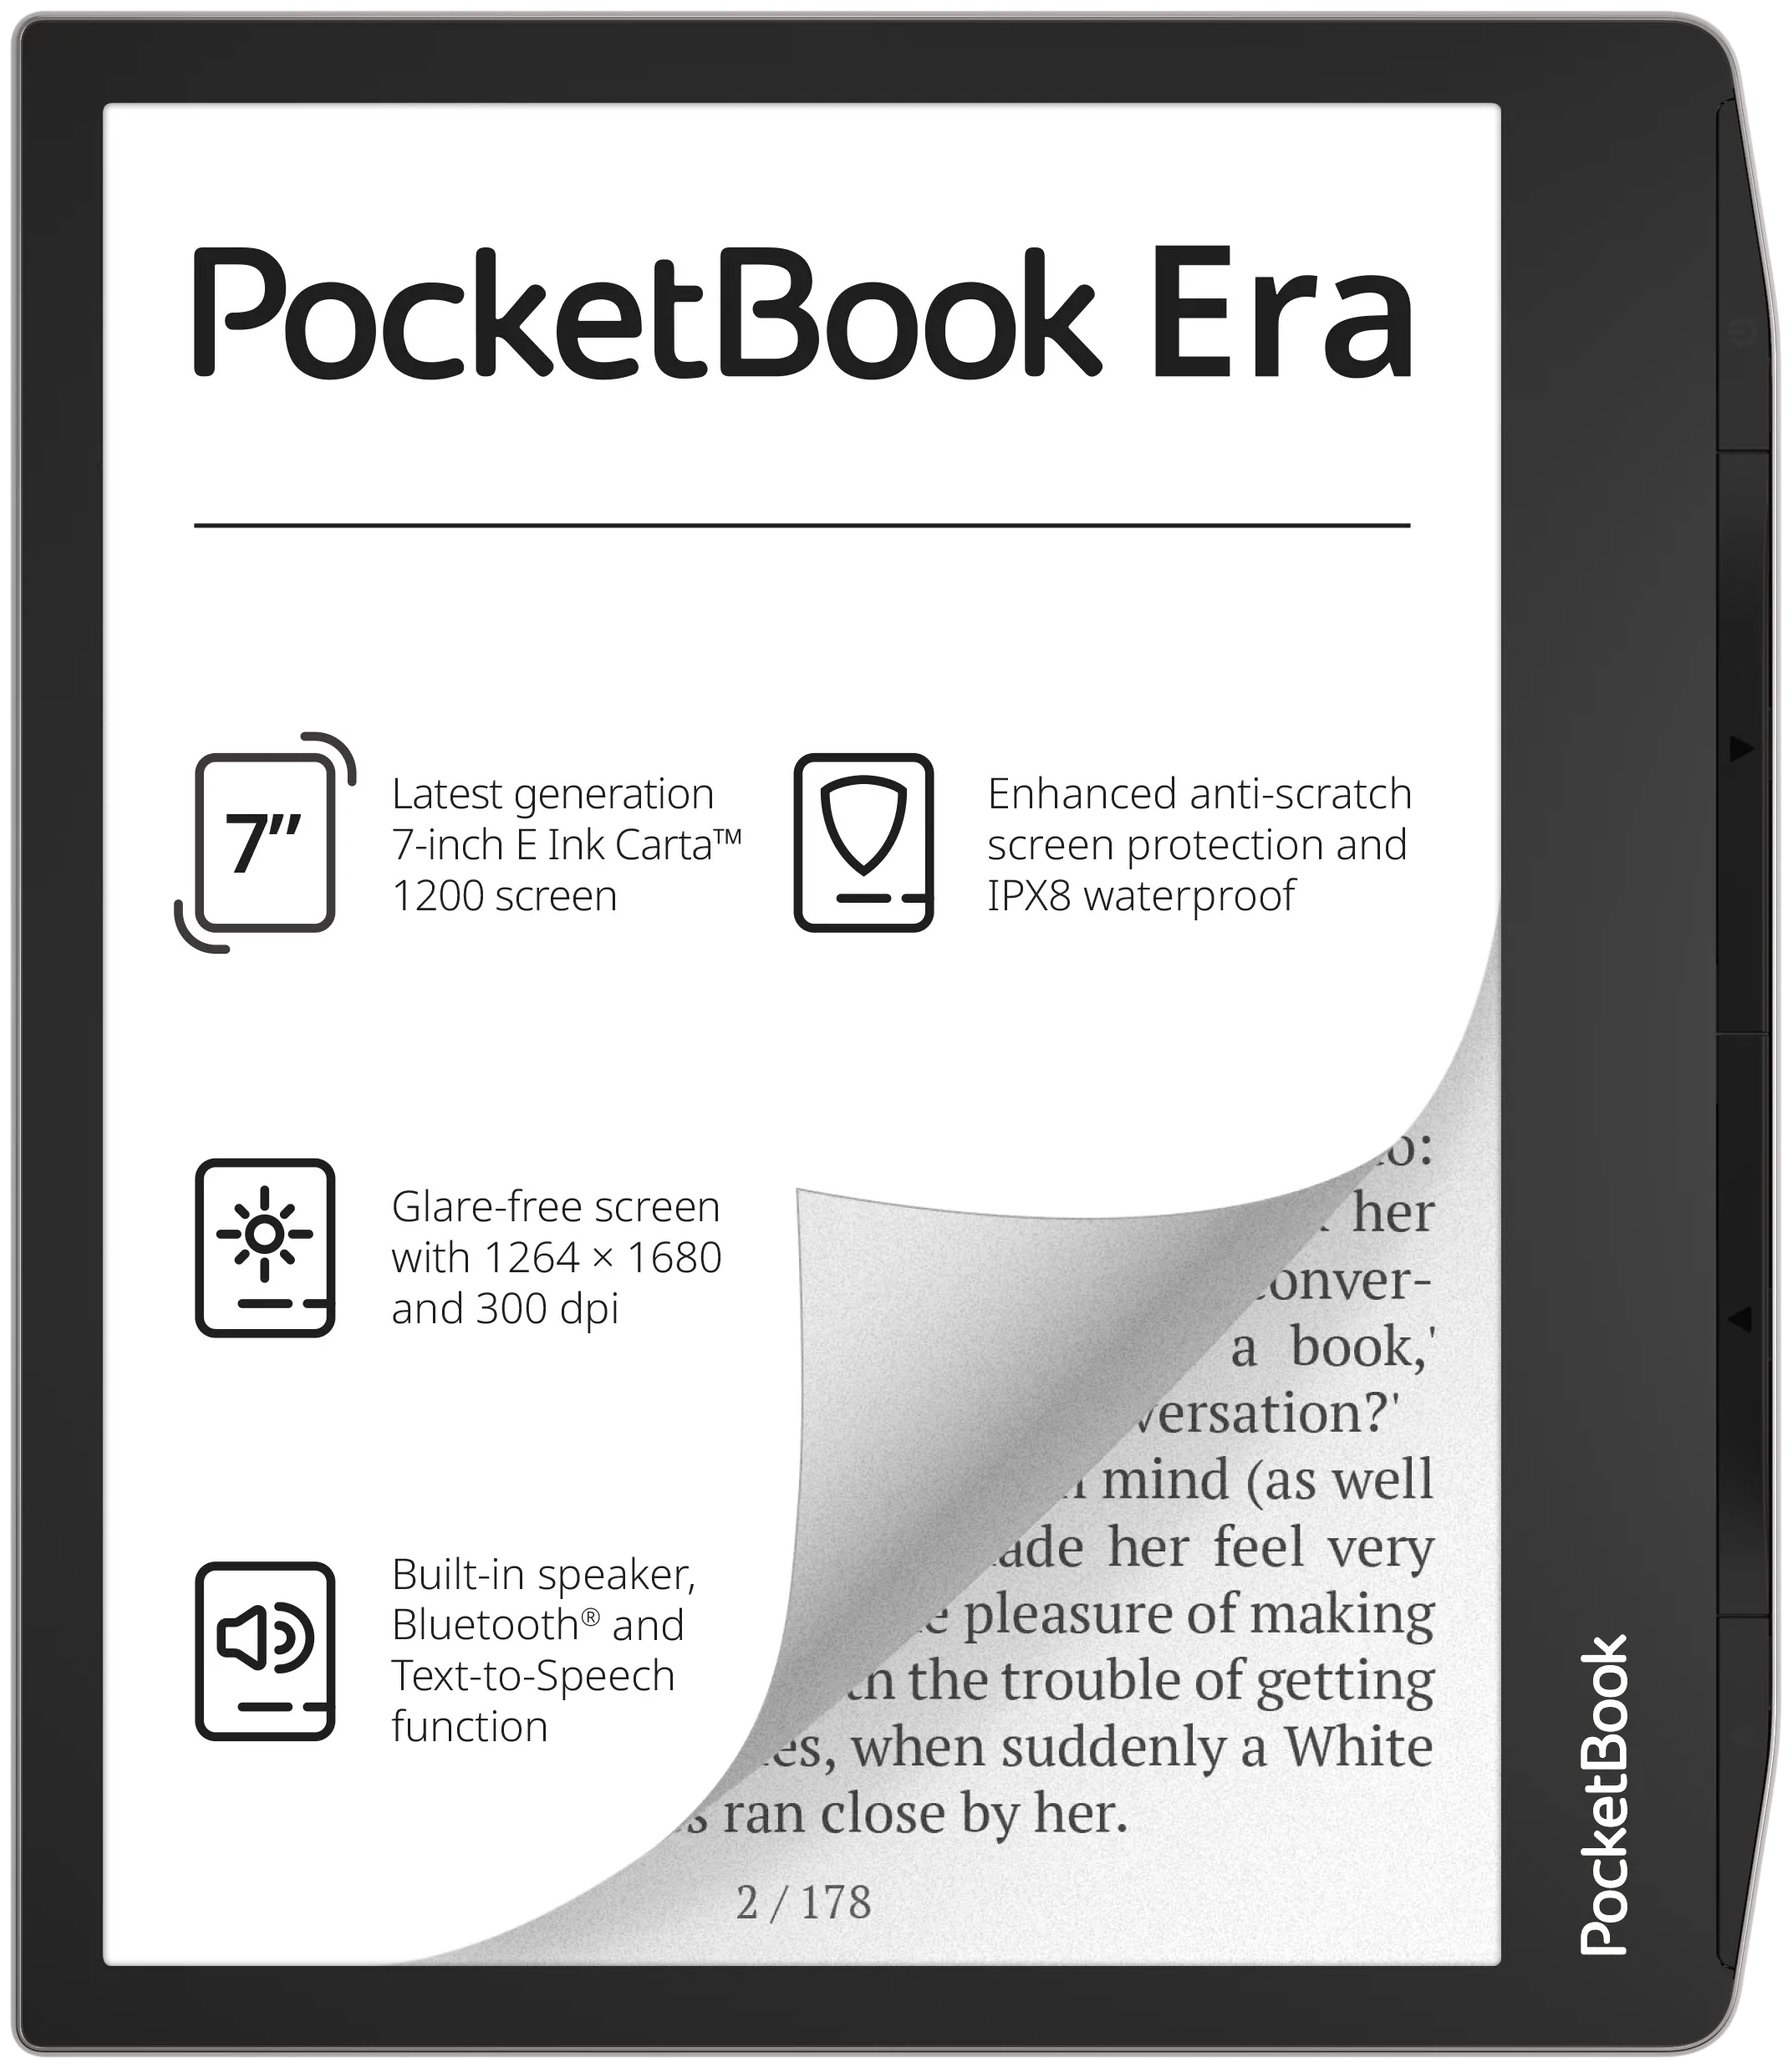 7" Электронная книга PocketBook Era